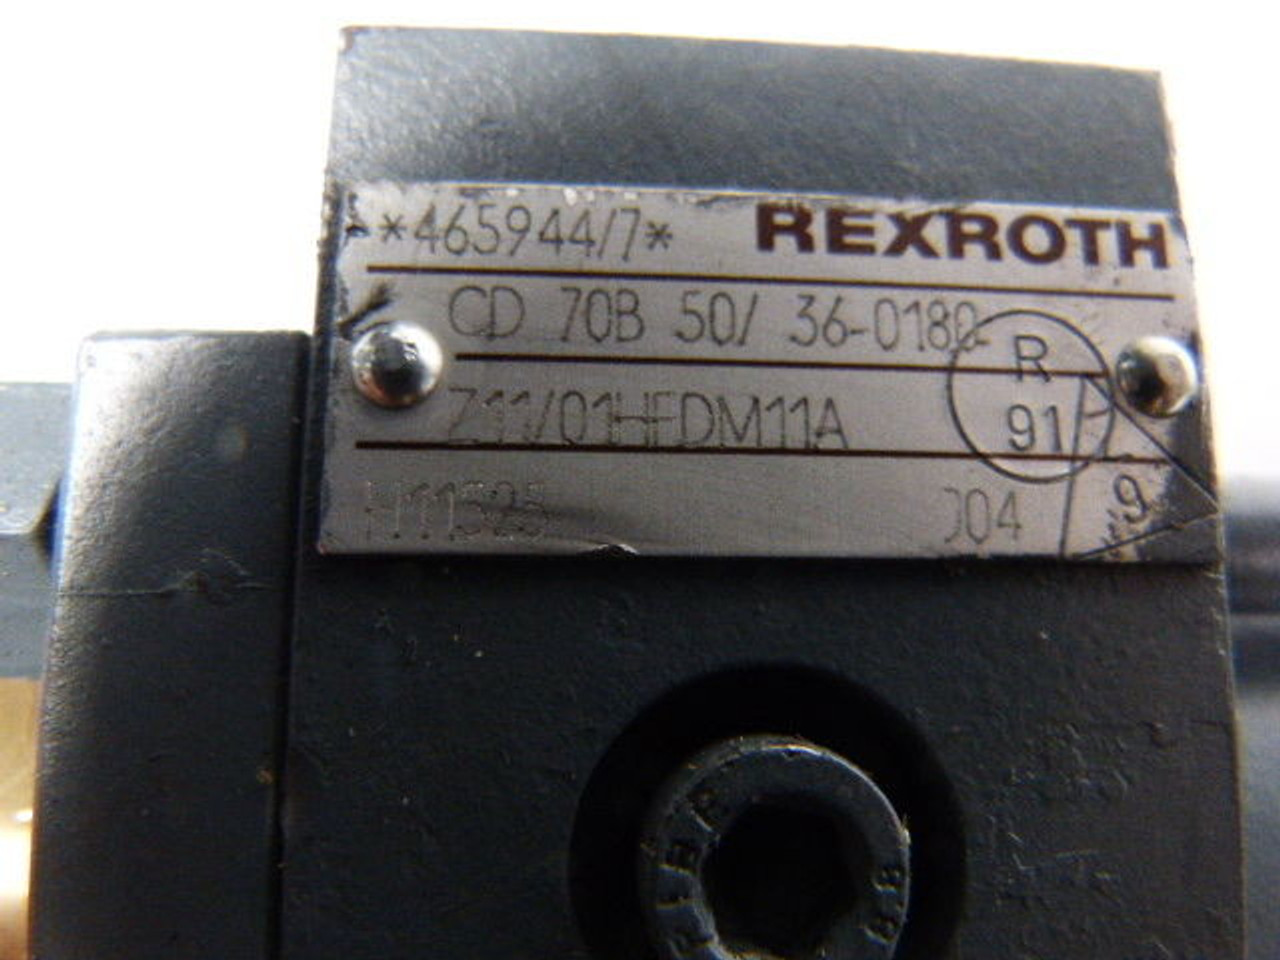 Rexroth CD70B50/36-0180Z11/01HFDM11A Hydraulic Cylinder USED